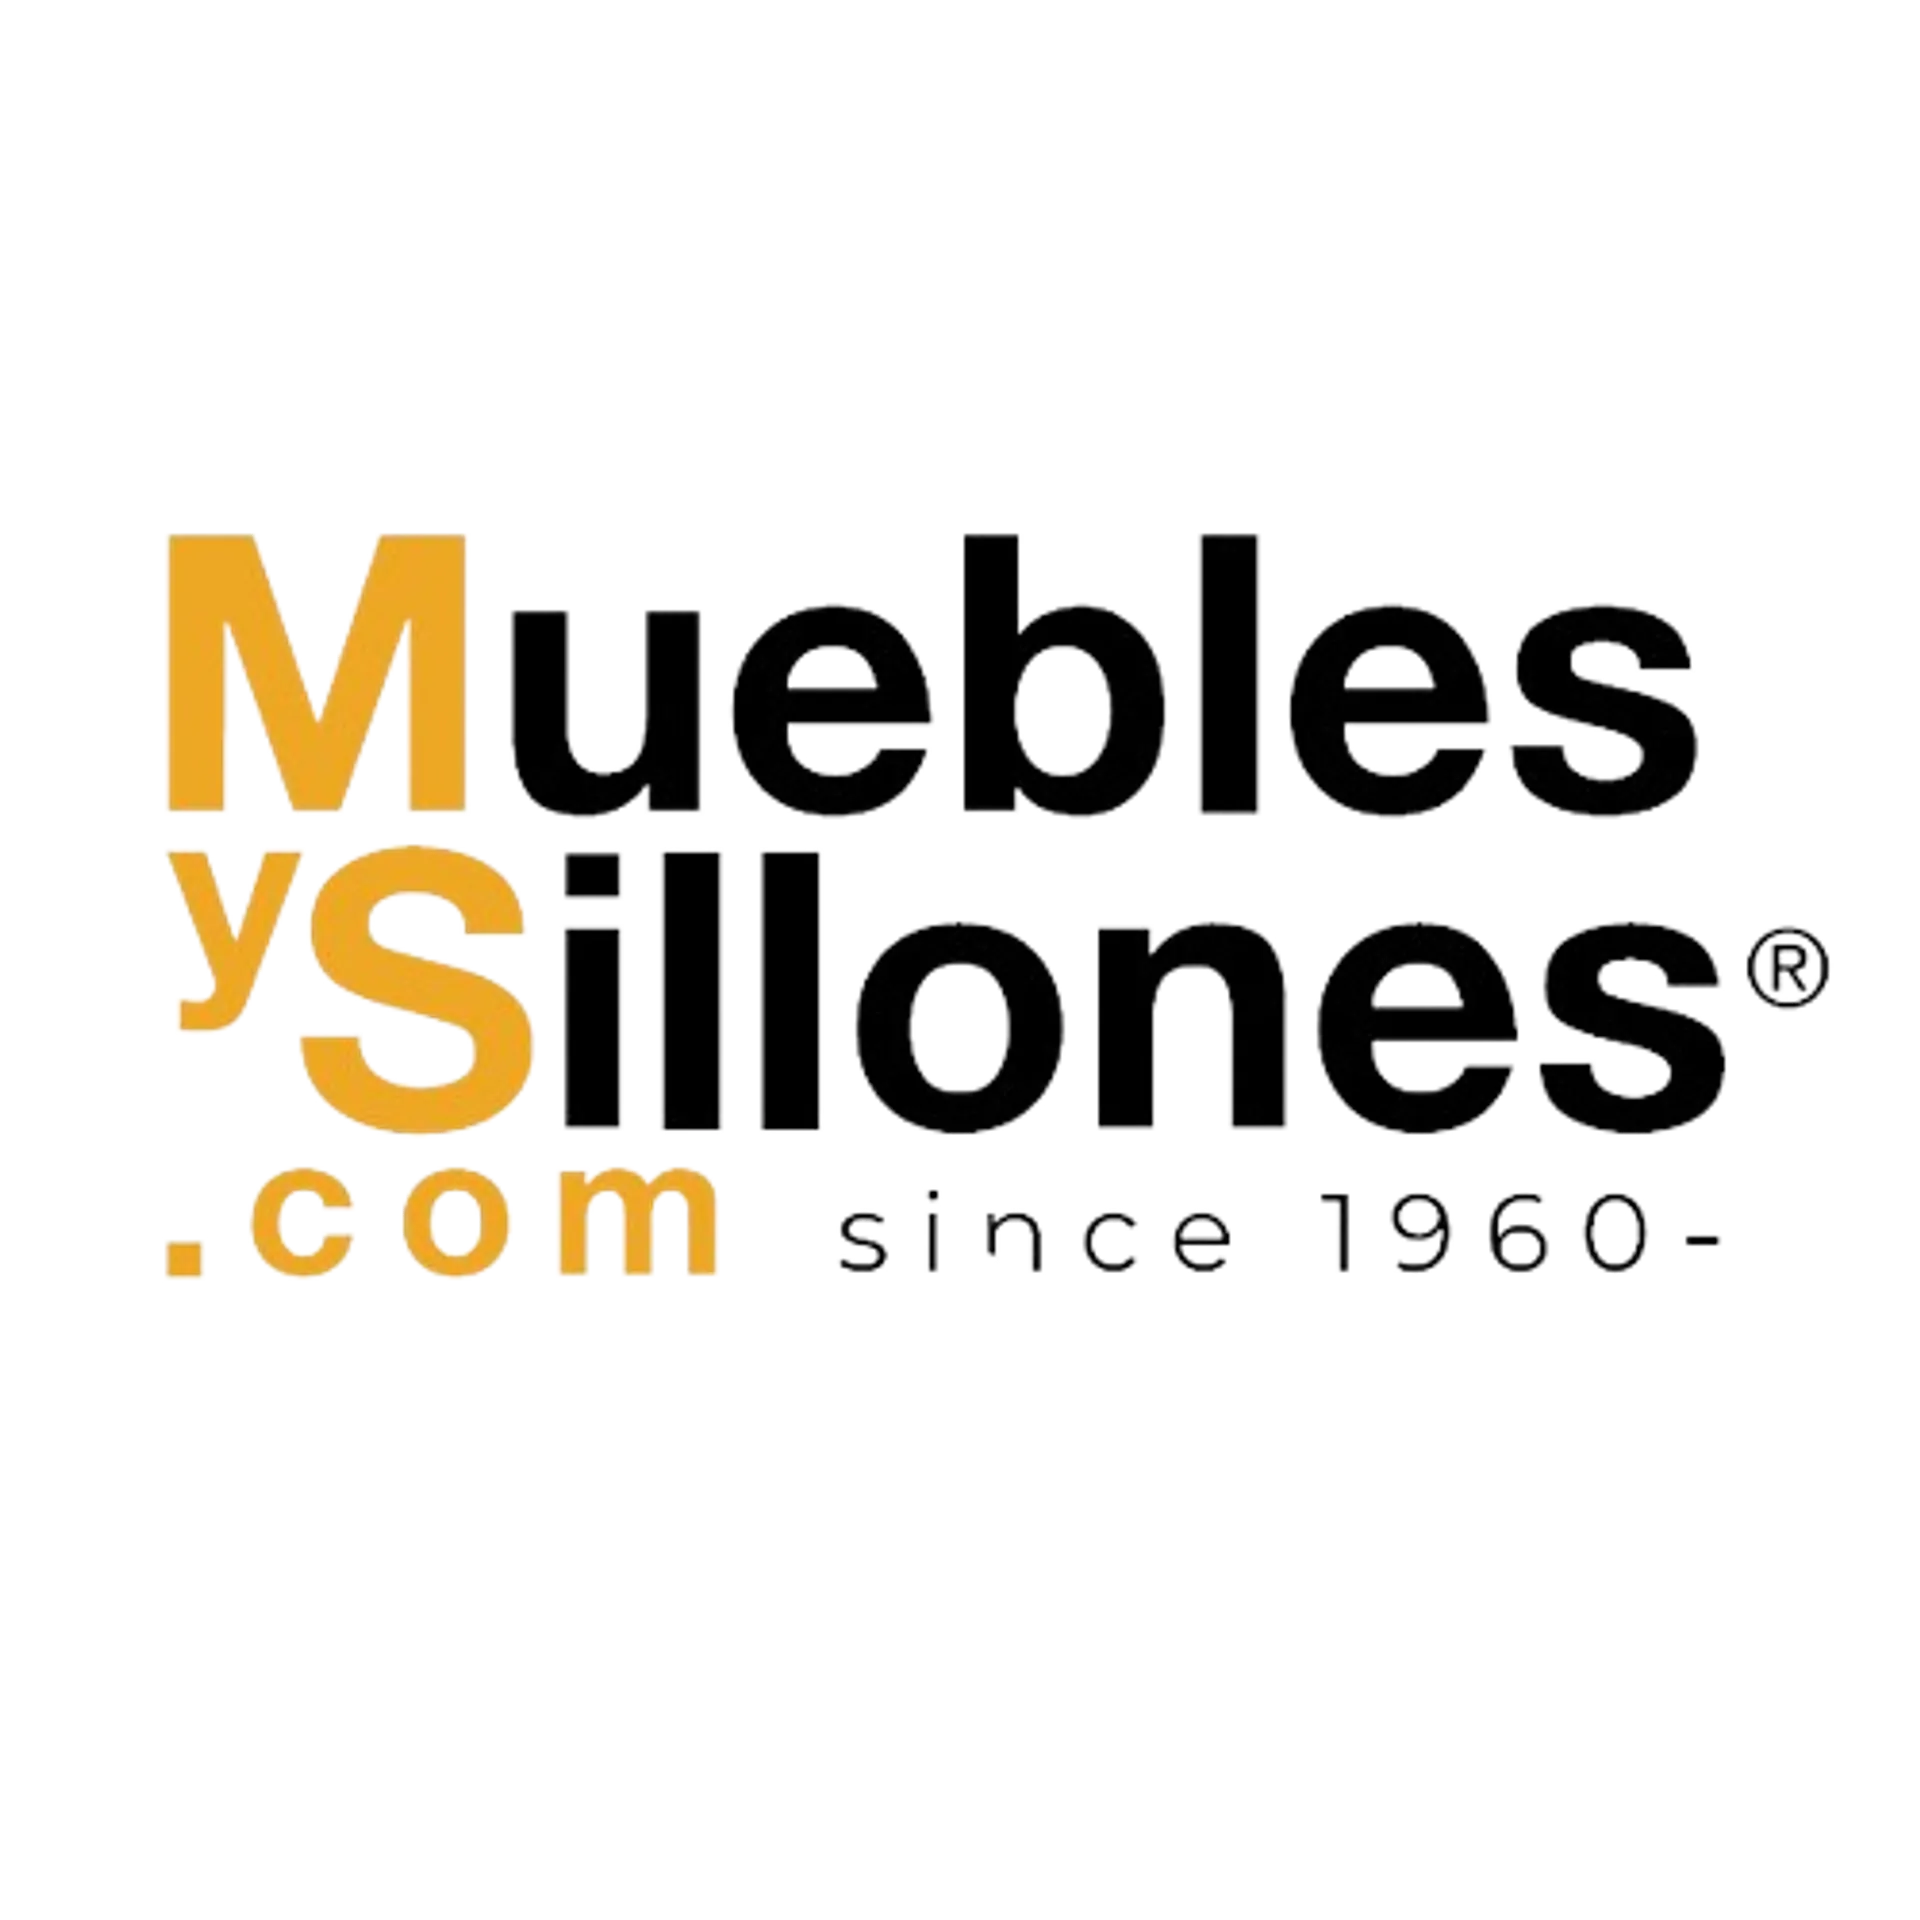 MUEBLES Y SILLONES logo de catálogo